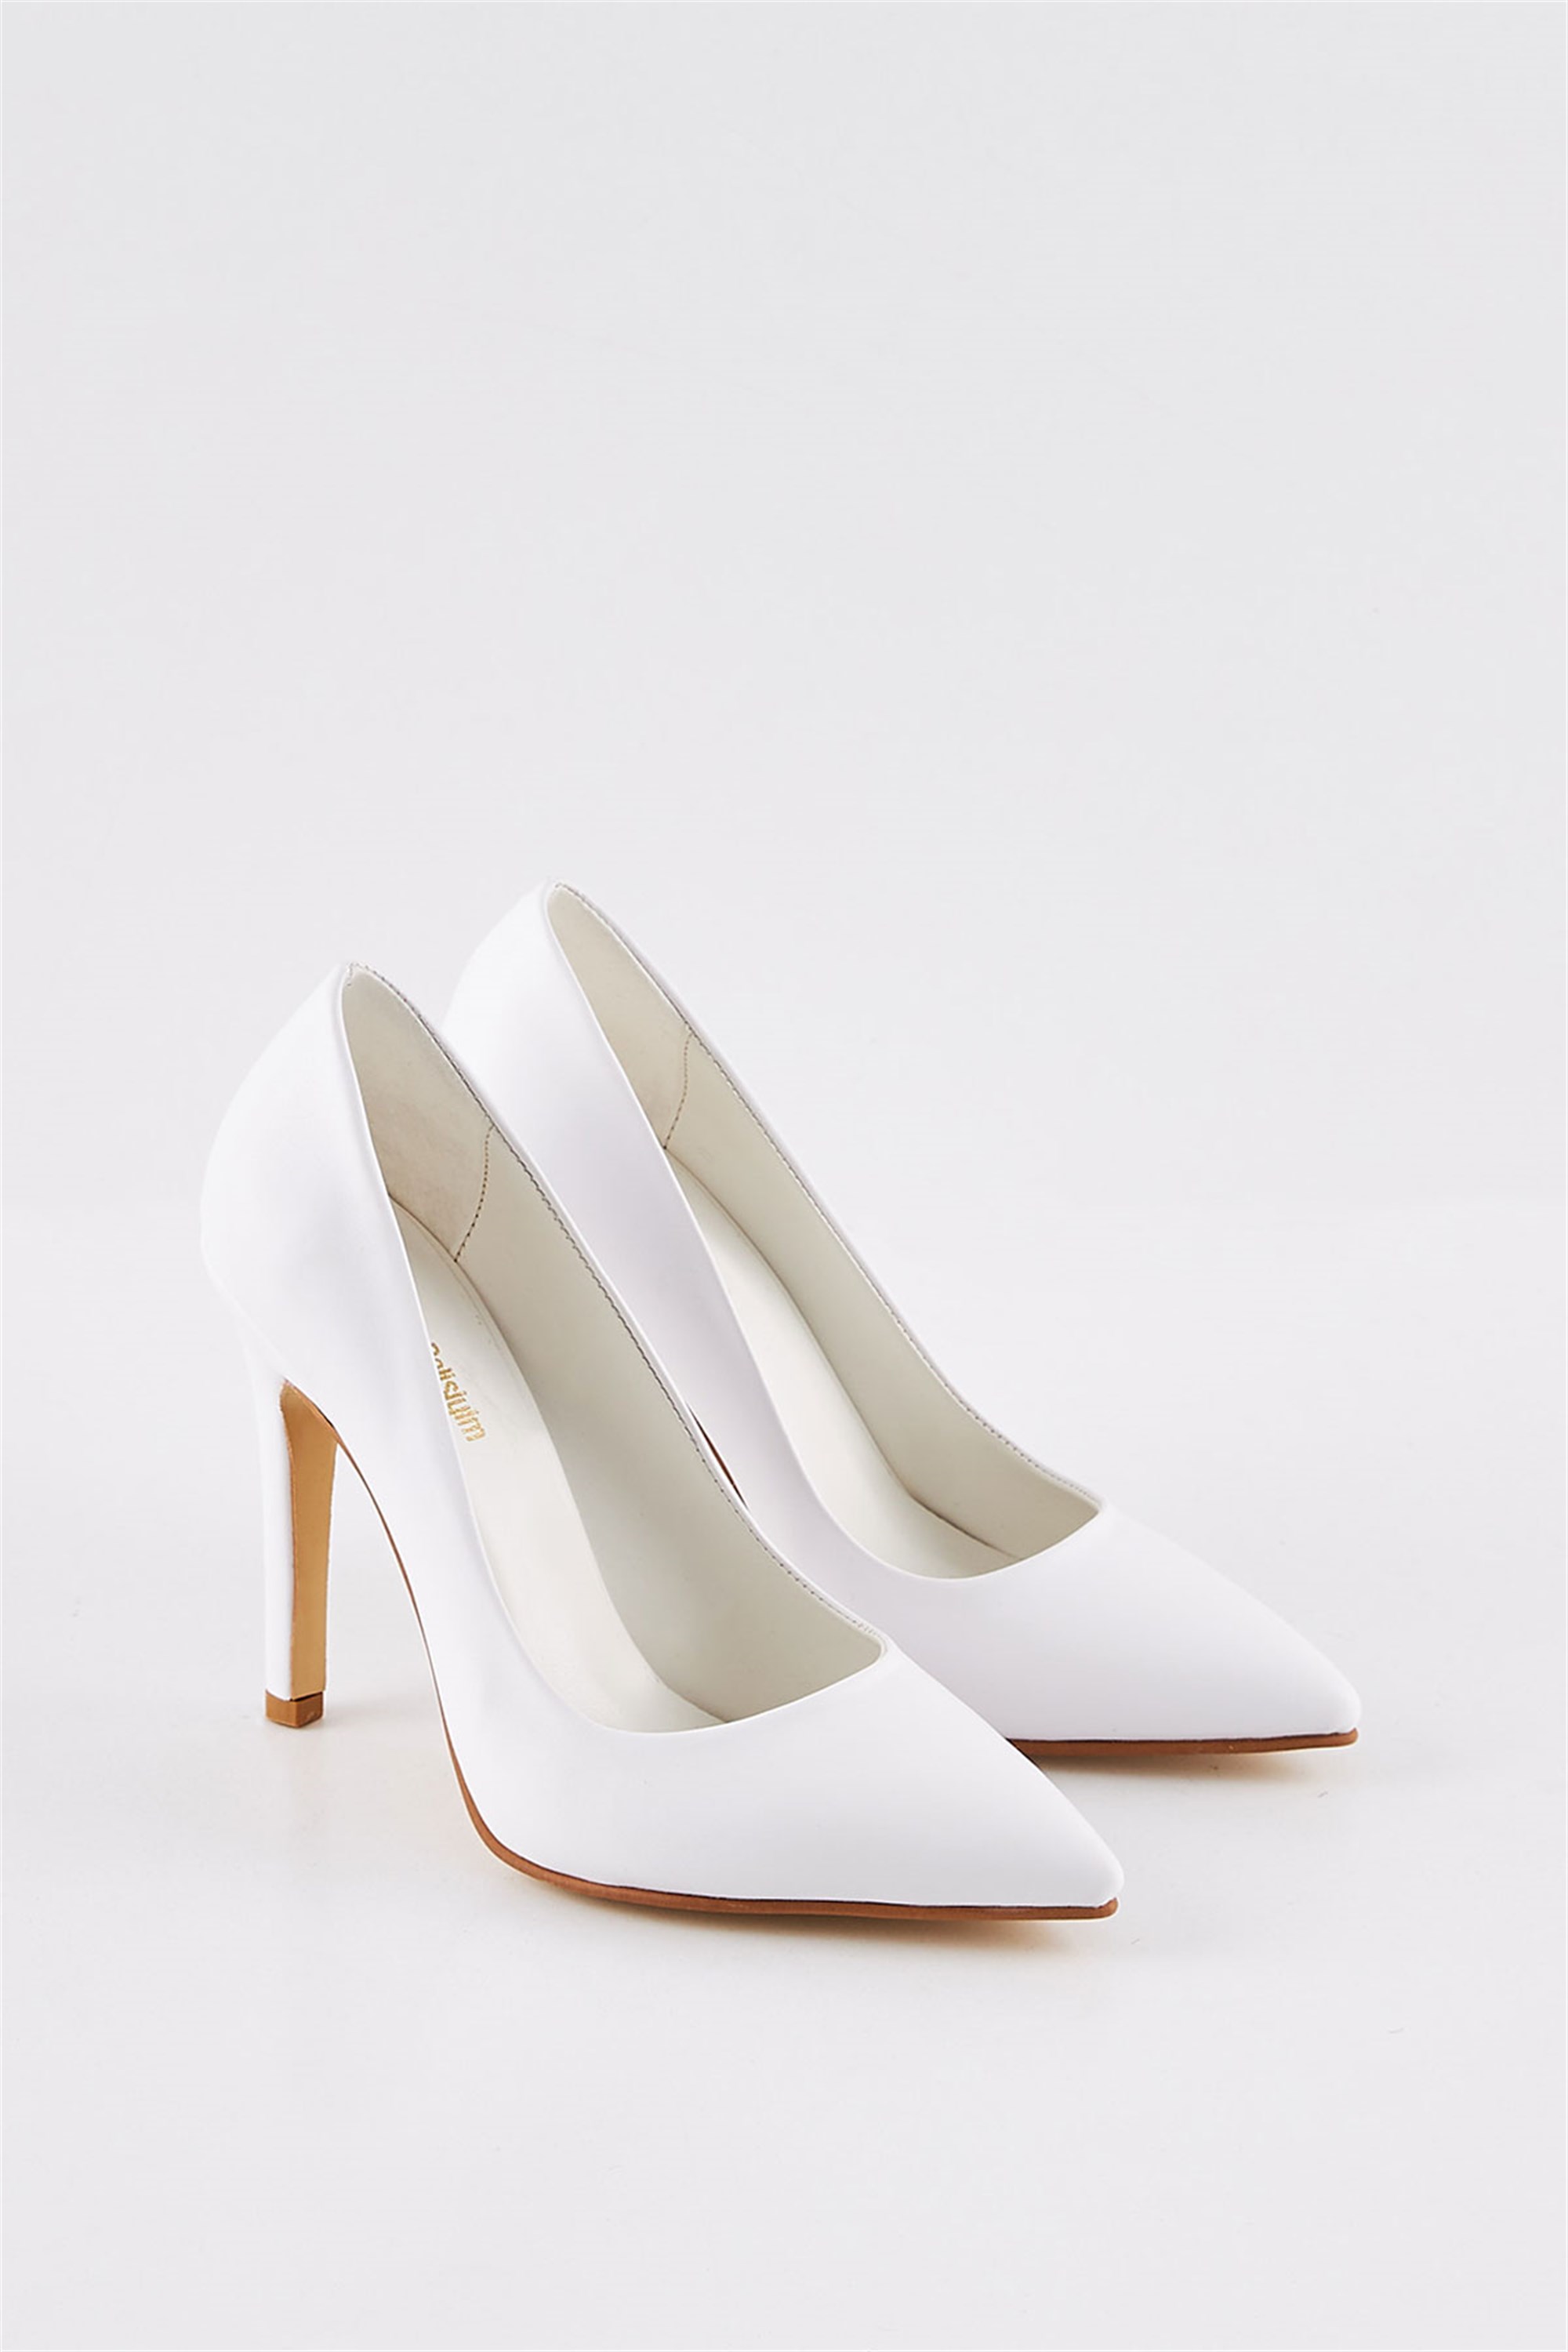 Samira Beyaz Deri Stiletto Ayakkabı